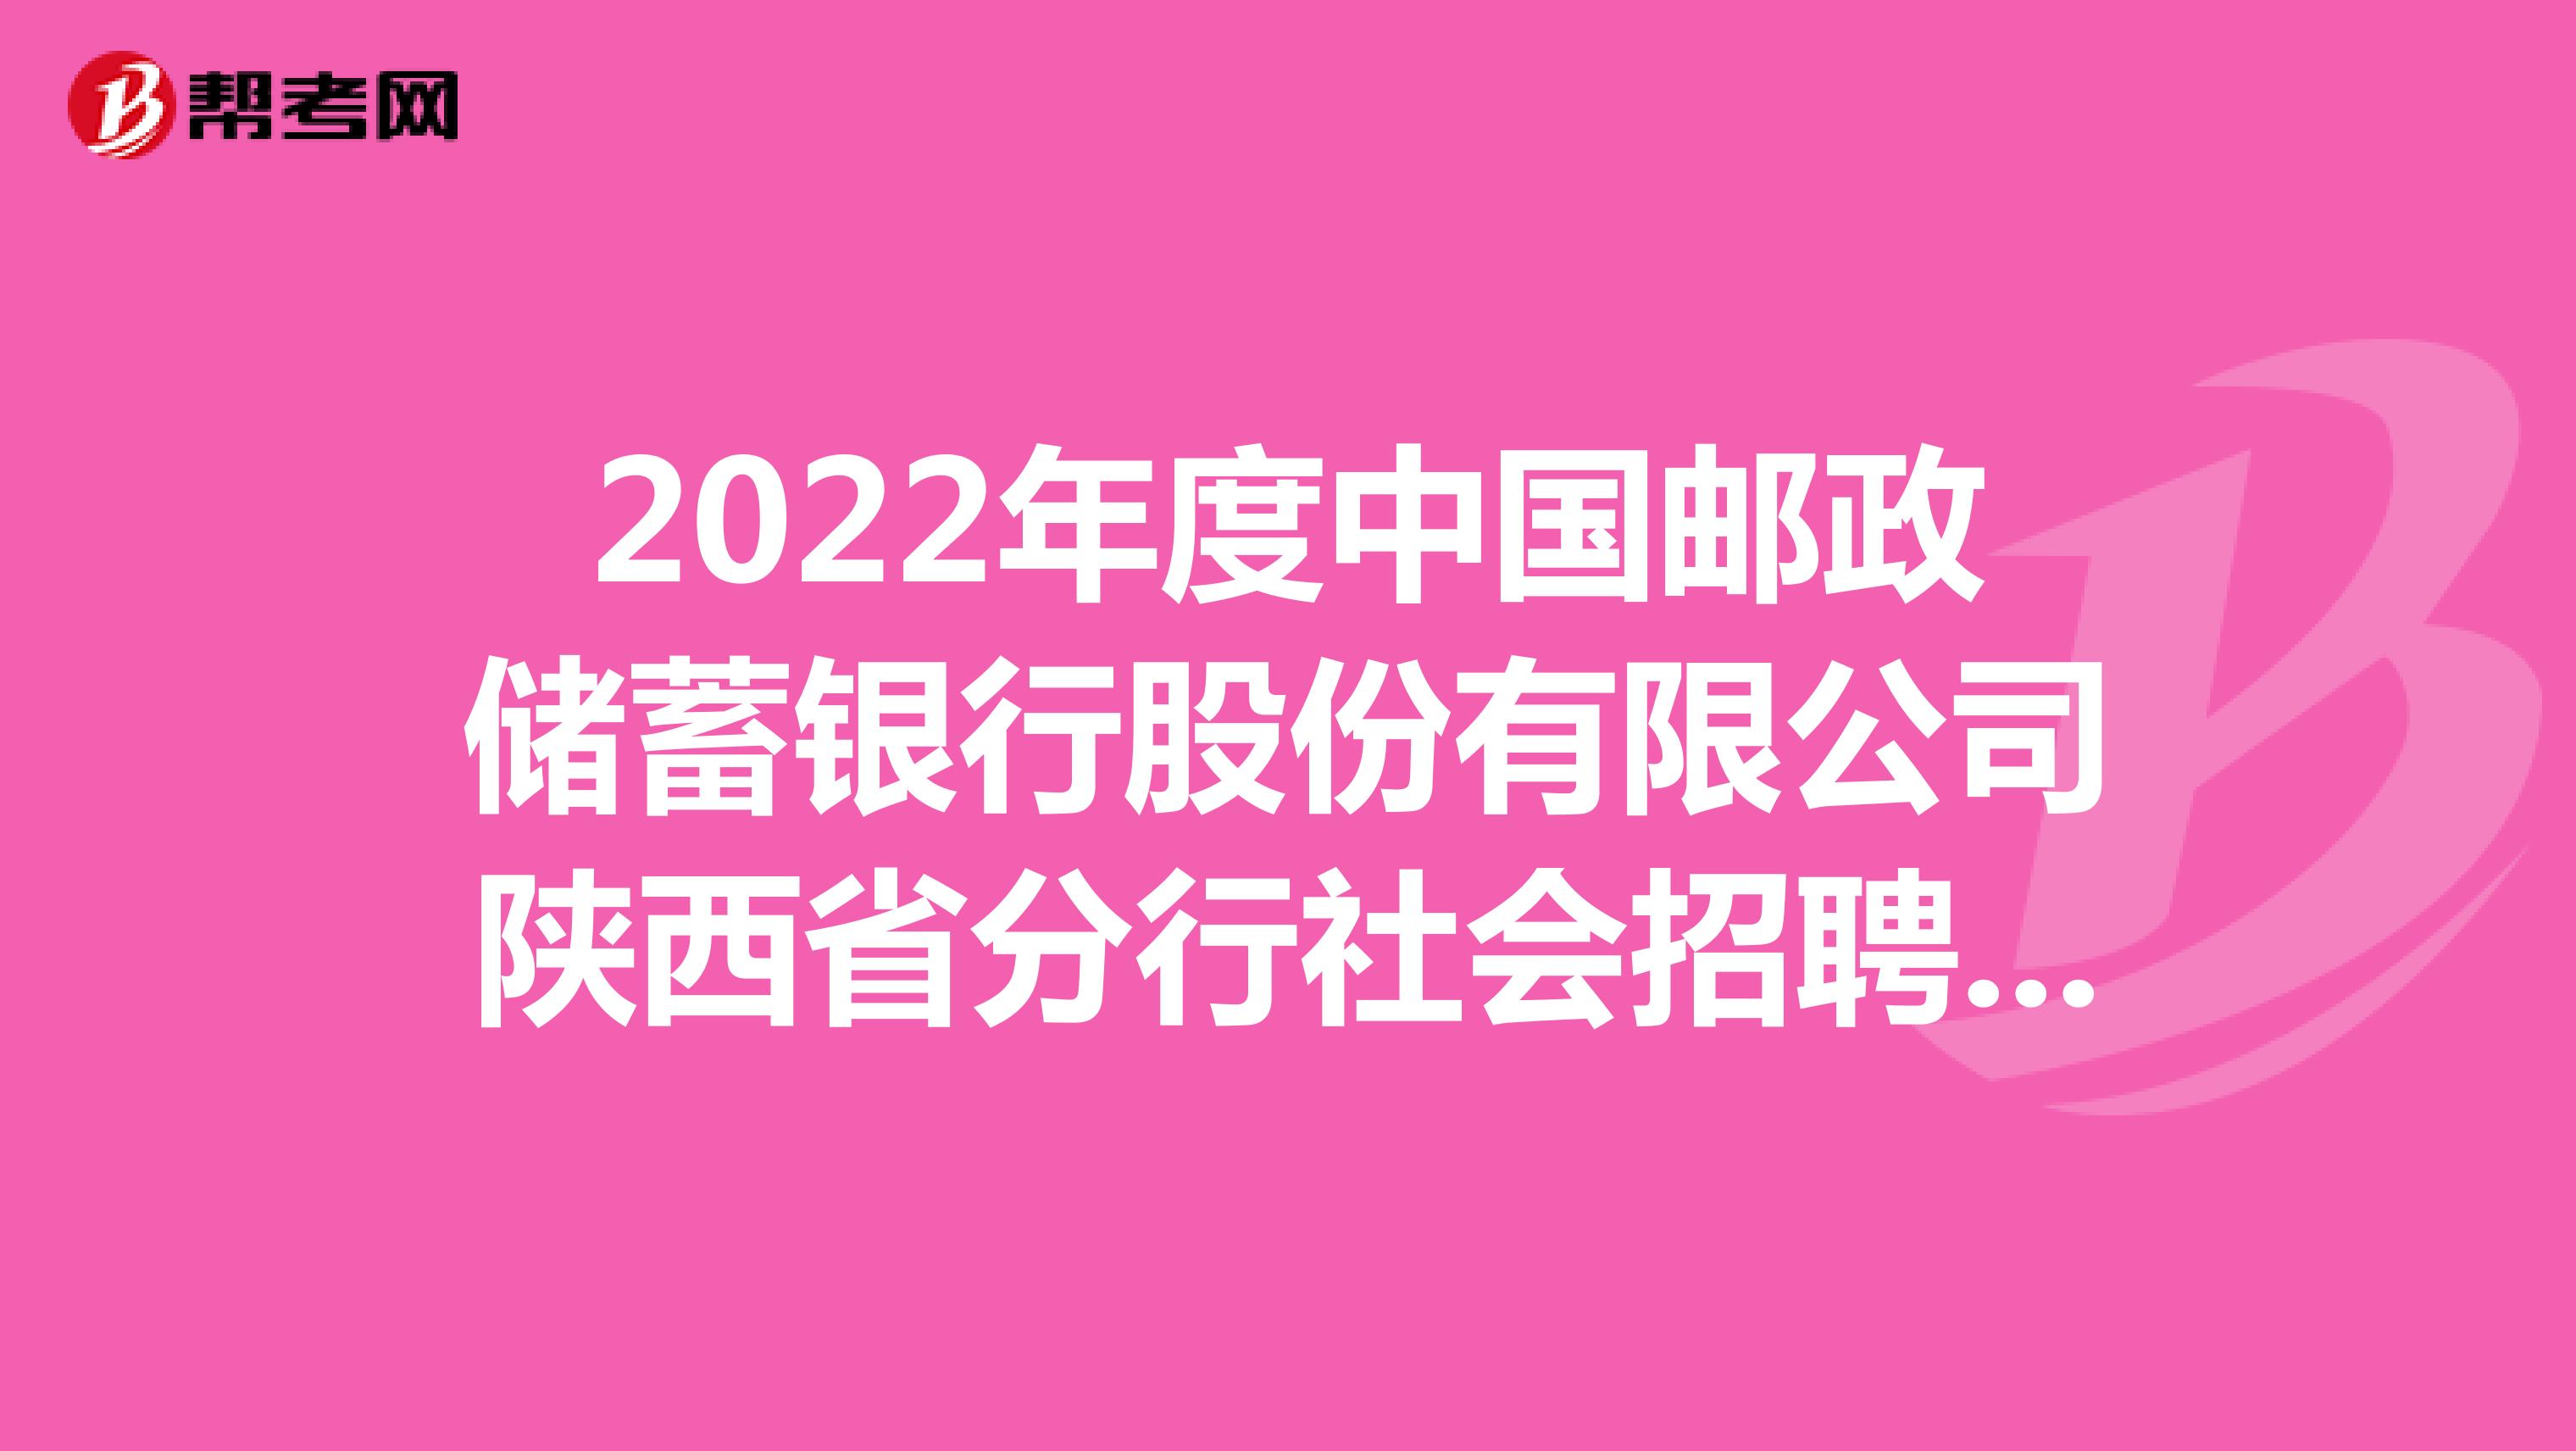 2022年度中国邮政储蓄银行股份有限公司陕西省分行社会招聘公告